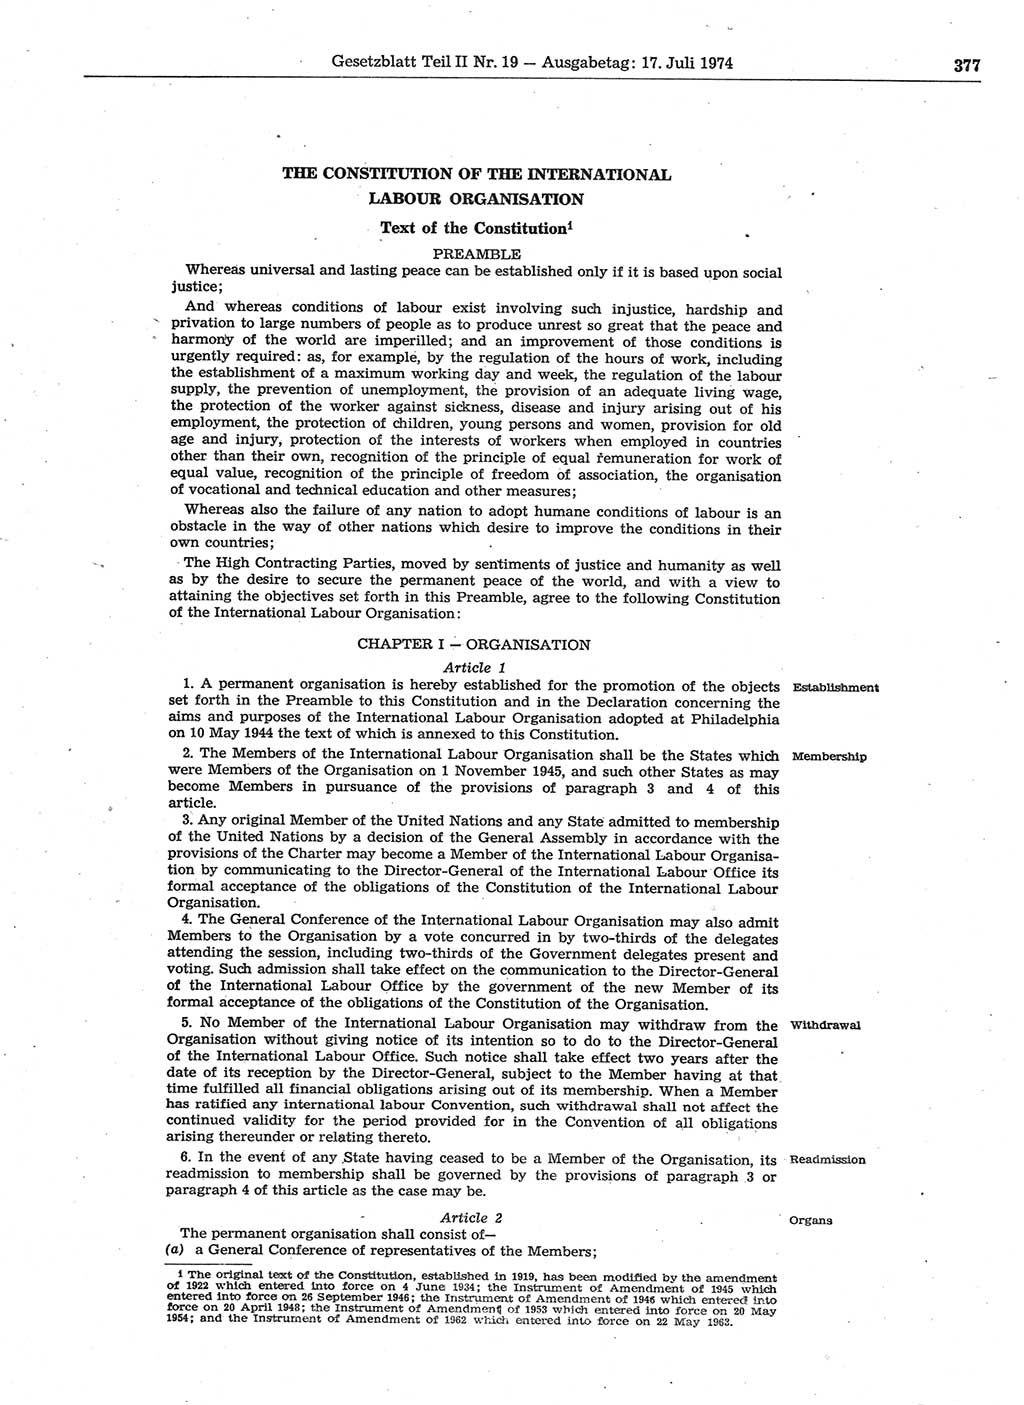 Gesetzblatt (GBl.) der Deutschen Demokratischen Republik (DDR) Teil ⅠⅠ 1974, Seite 377 (GBl. DDR ⅠⅠ 1974, S. 377)